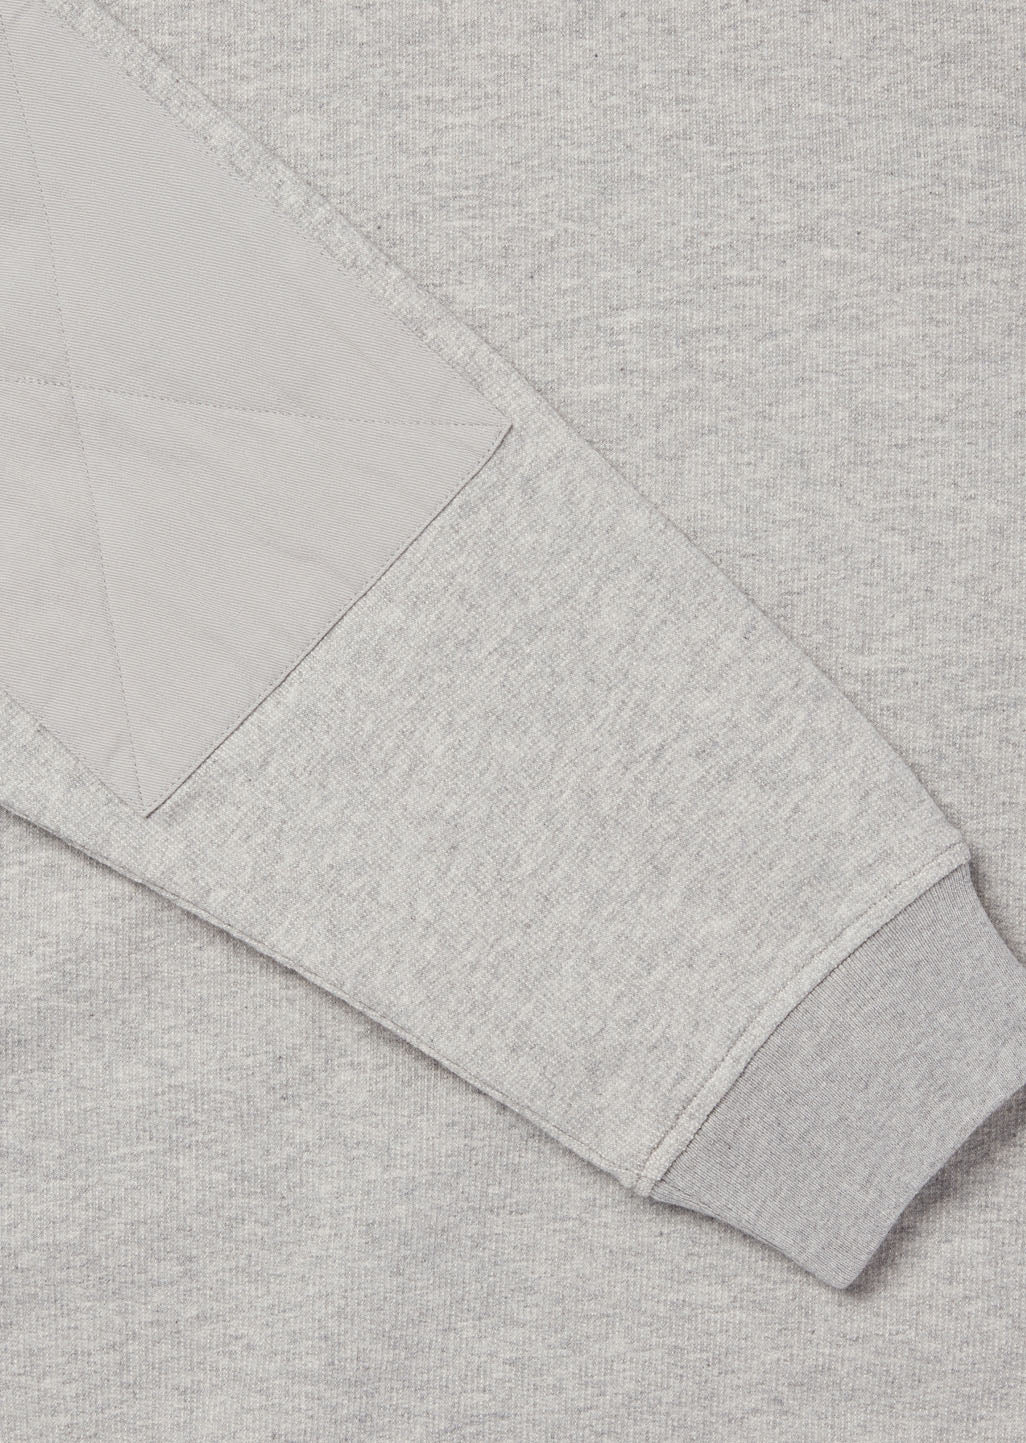 Tor Raglan Sweatshirt in Grey Marl